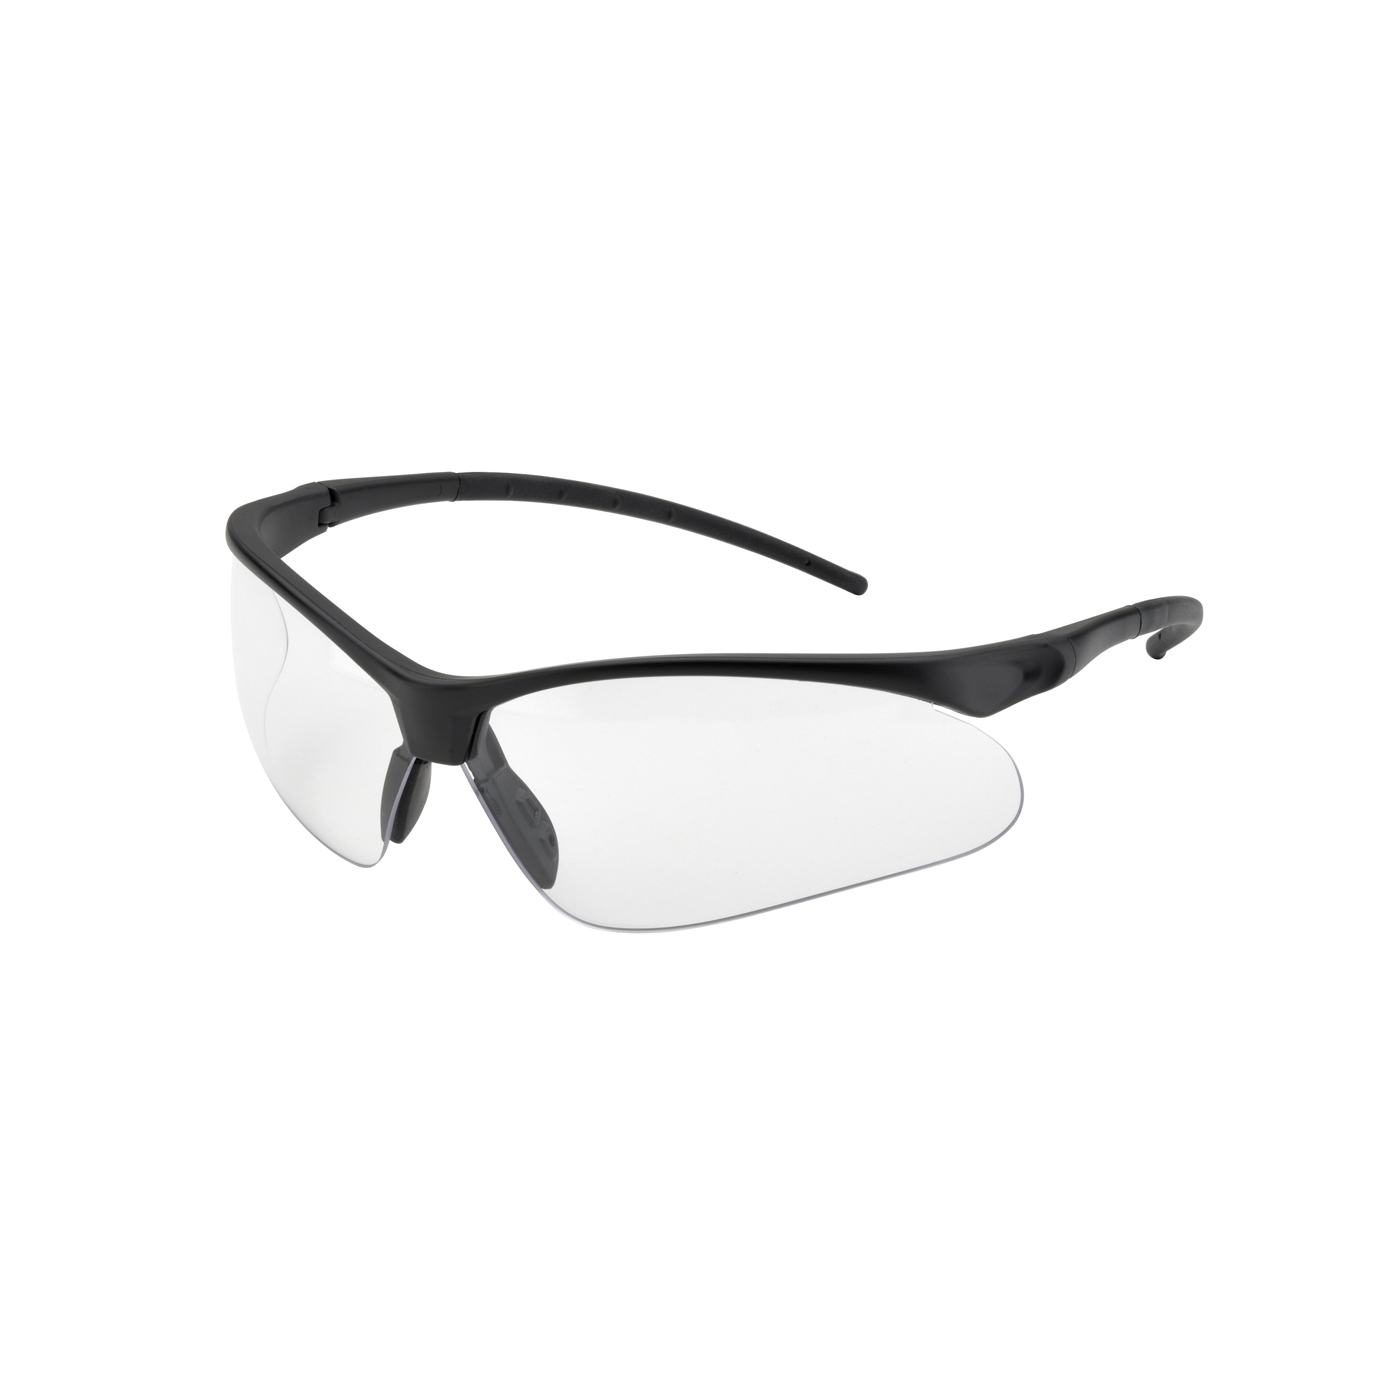 Elvex Flex-Pro Safety Glasses - Black Frame with Core Flex Adjustable ...